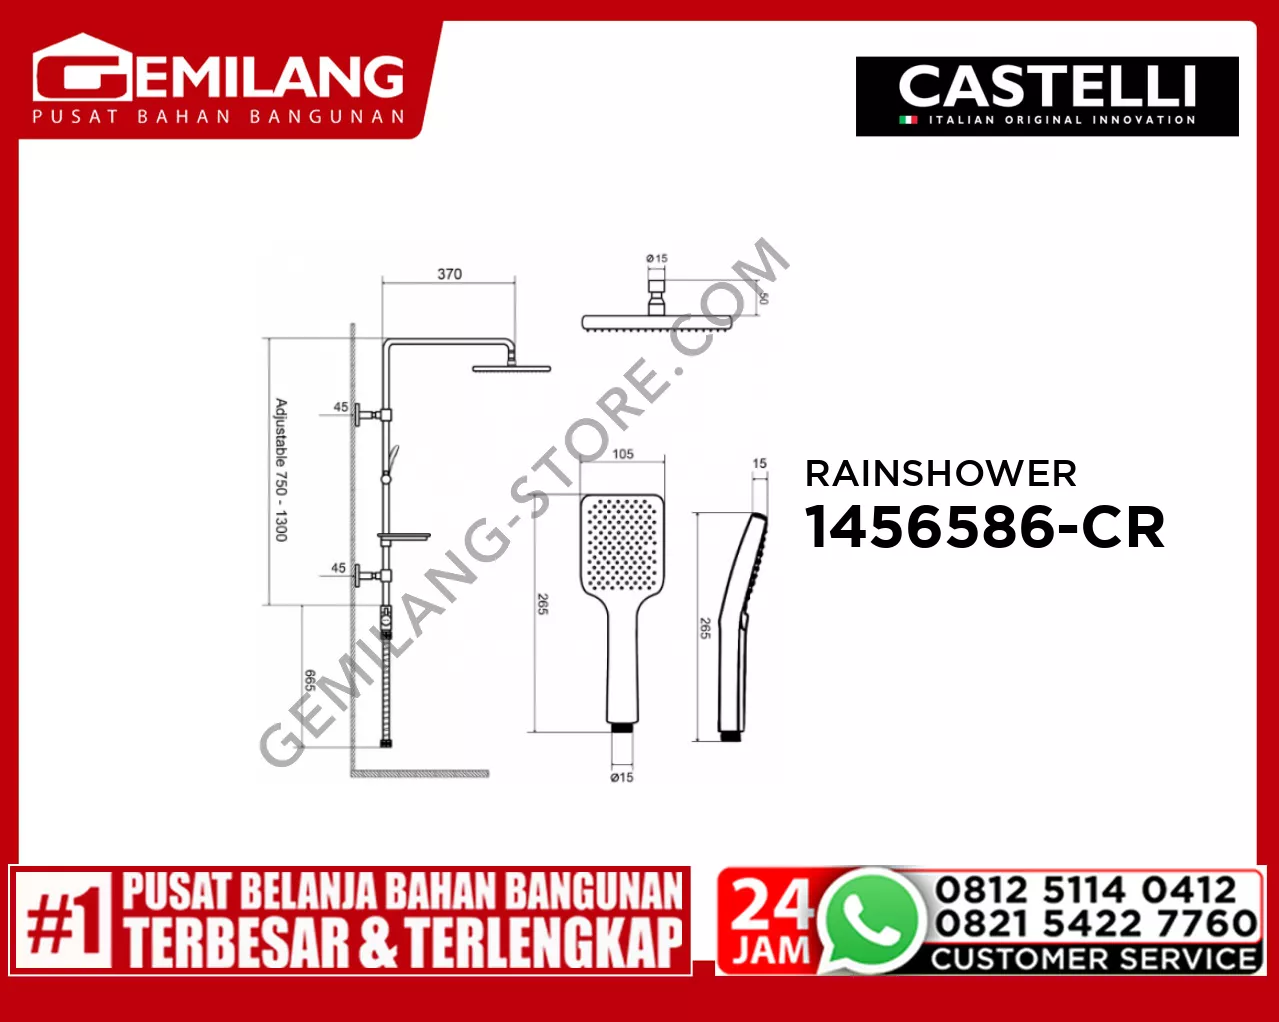 CASTELLI RAINSHOWER SET 1456586-CR